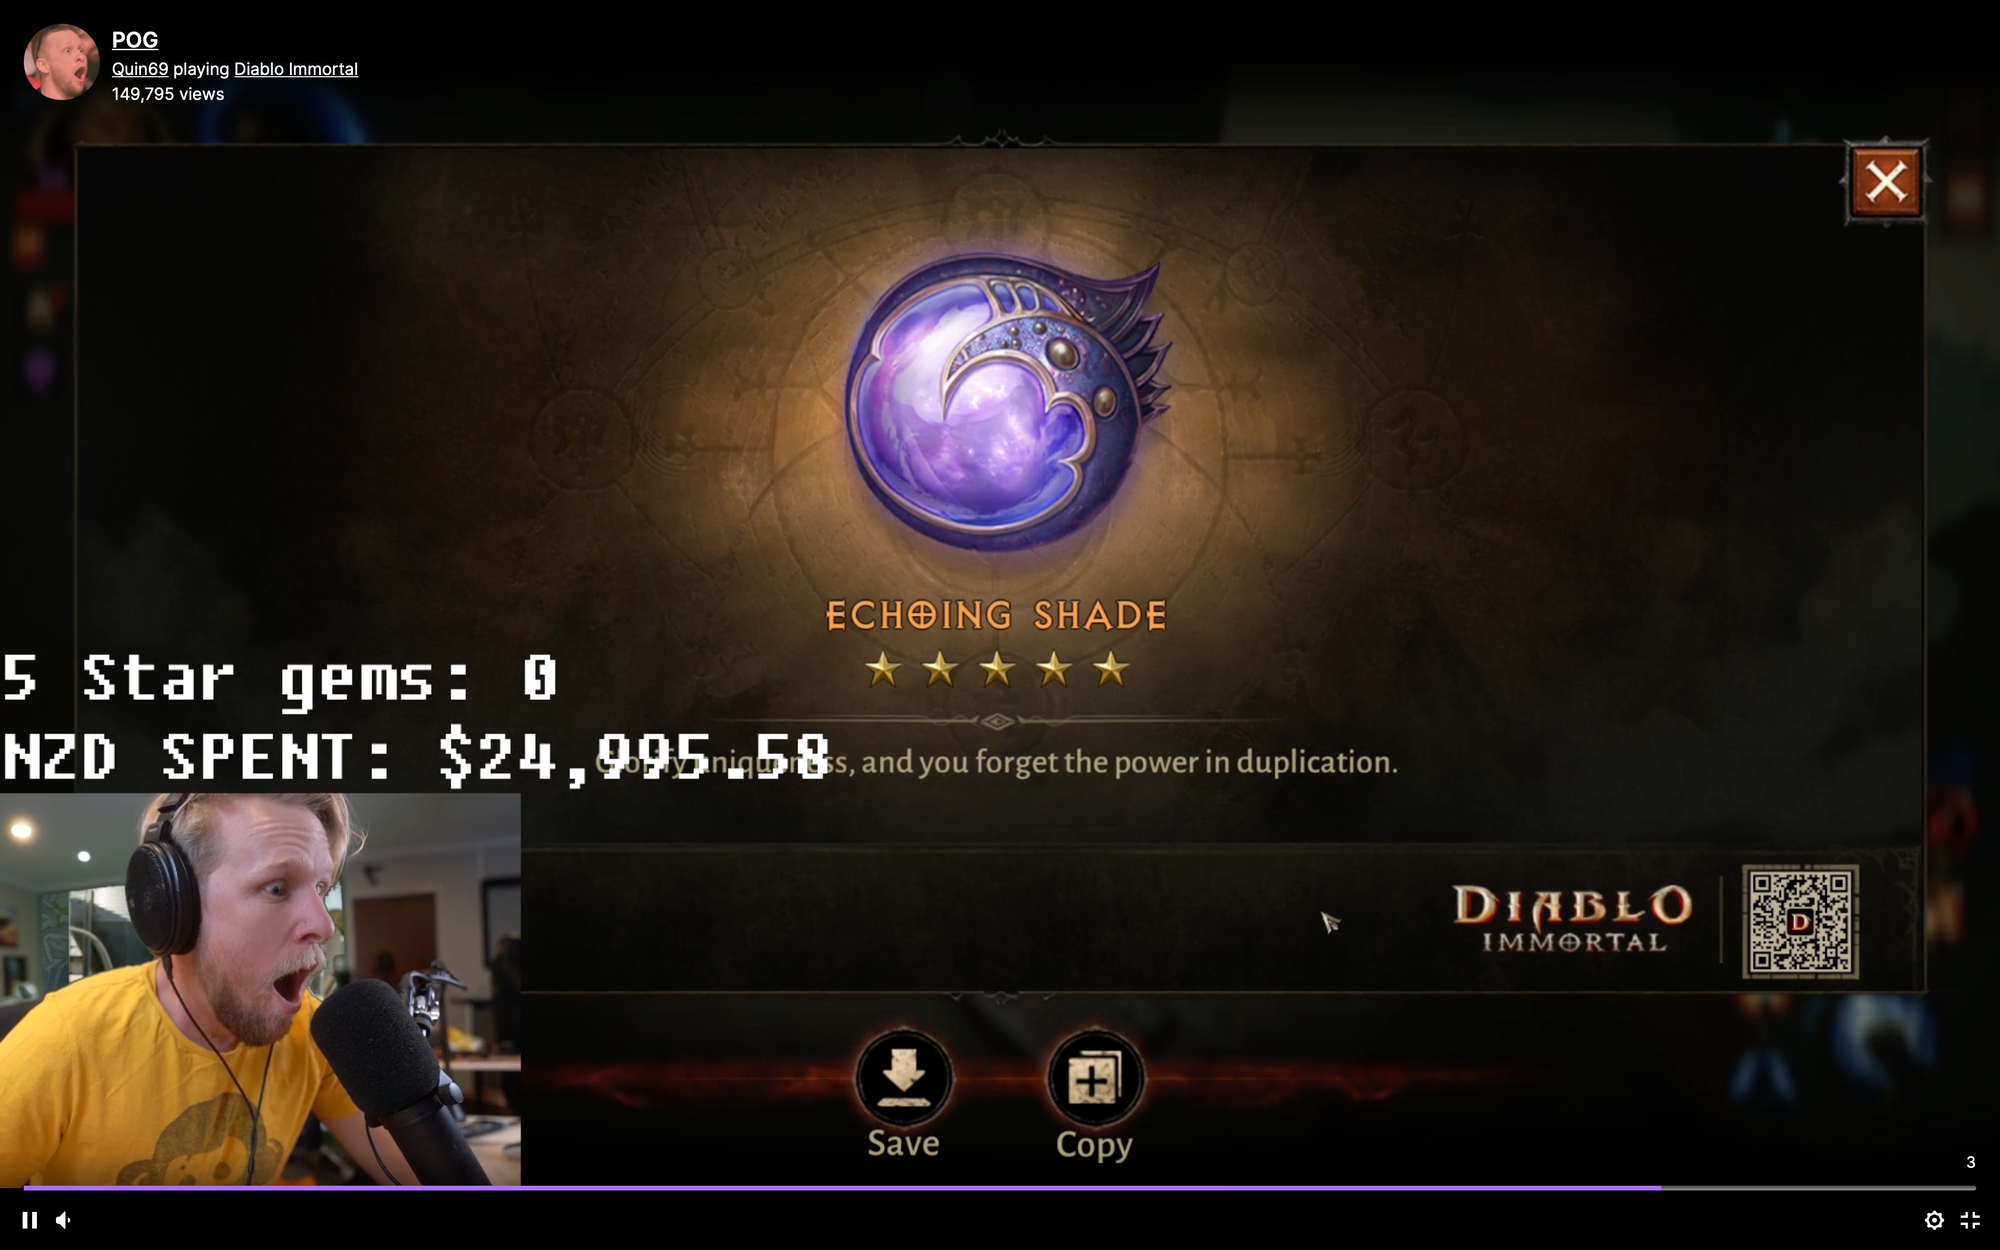 Nạp hơn 350 triệu đồng để có đồ xịn, người chơi Diablo Immortal gây sốc khi xóa luôn nhân vật, bỏ game - Ảnh 3.